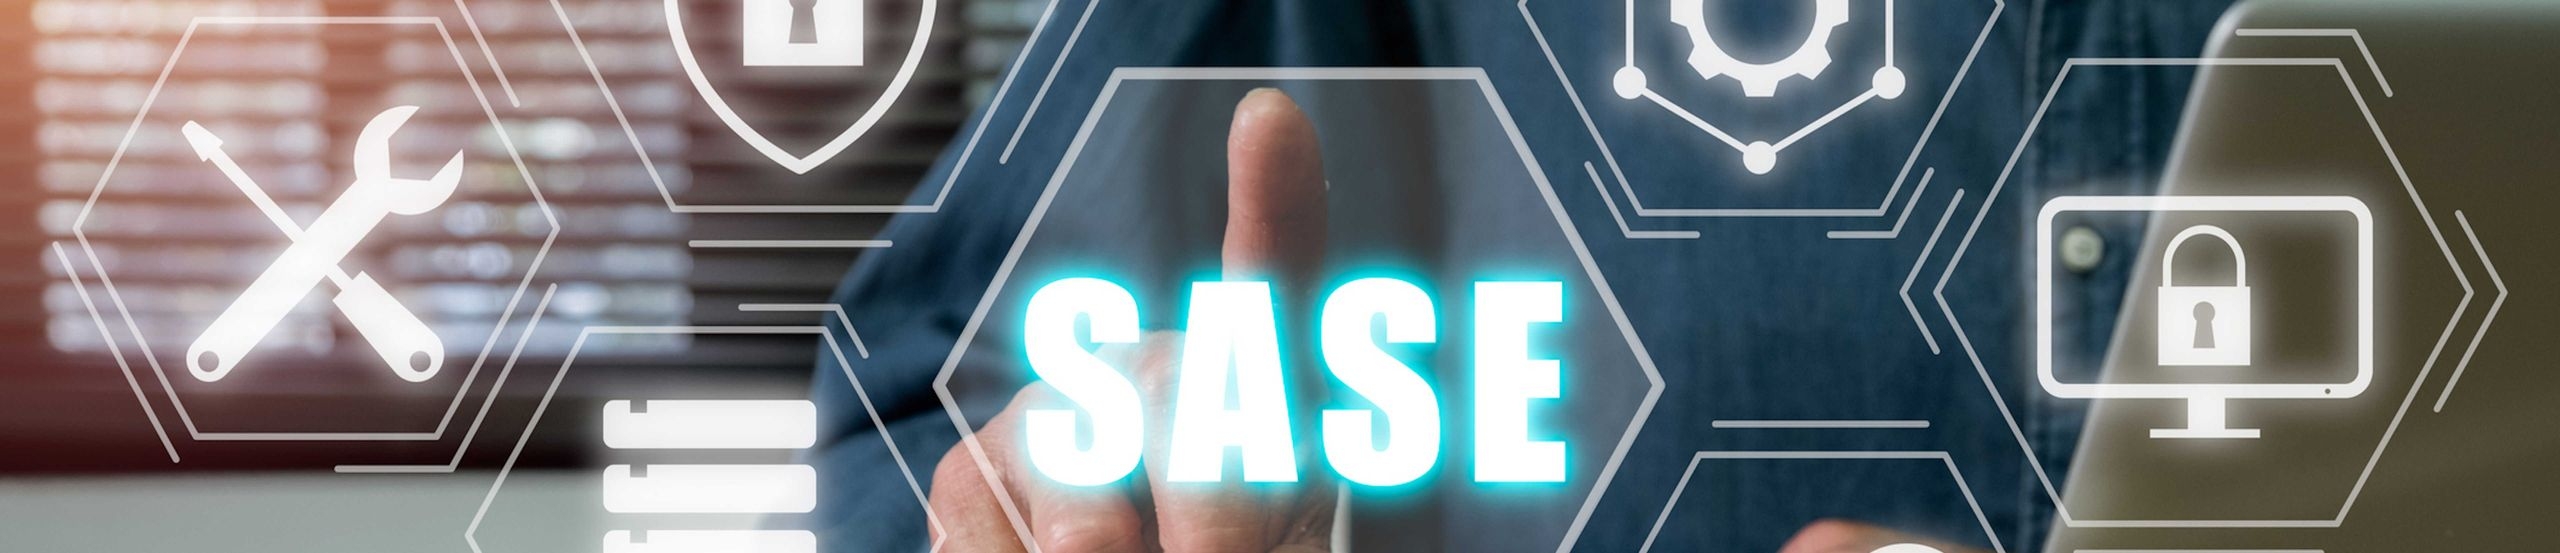 Ein Zeigefinger zeigt auf das Wort SASE